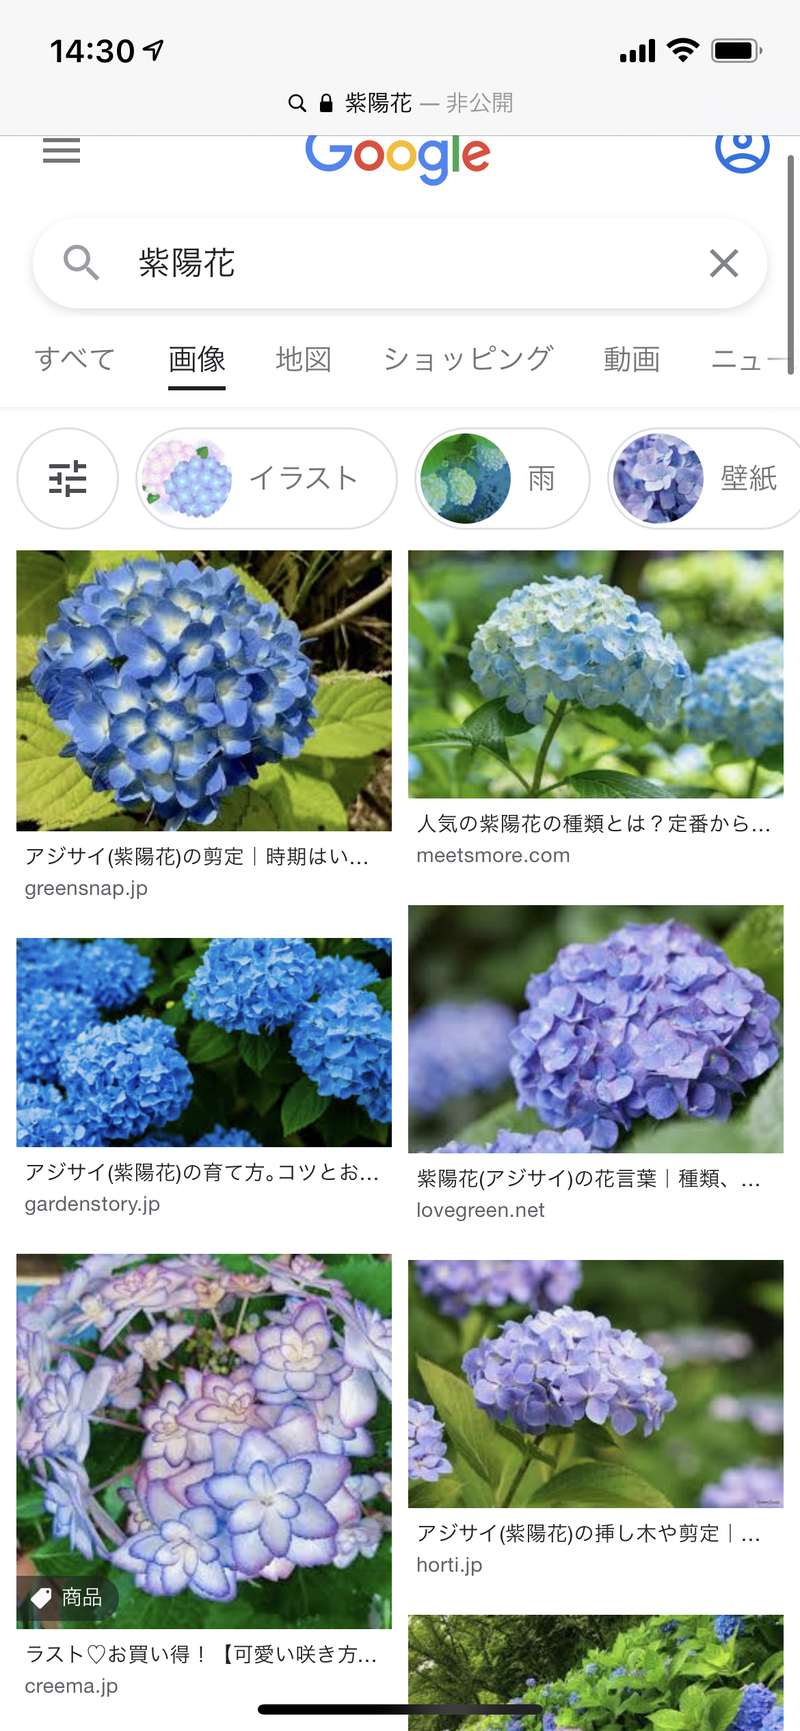 紫陽花 是什麼意思 關於日語 日文 的問題 Hinative